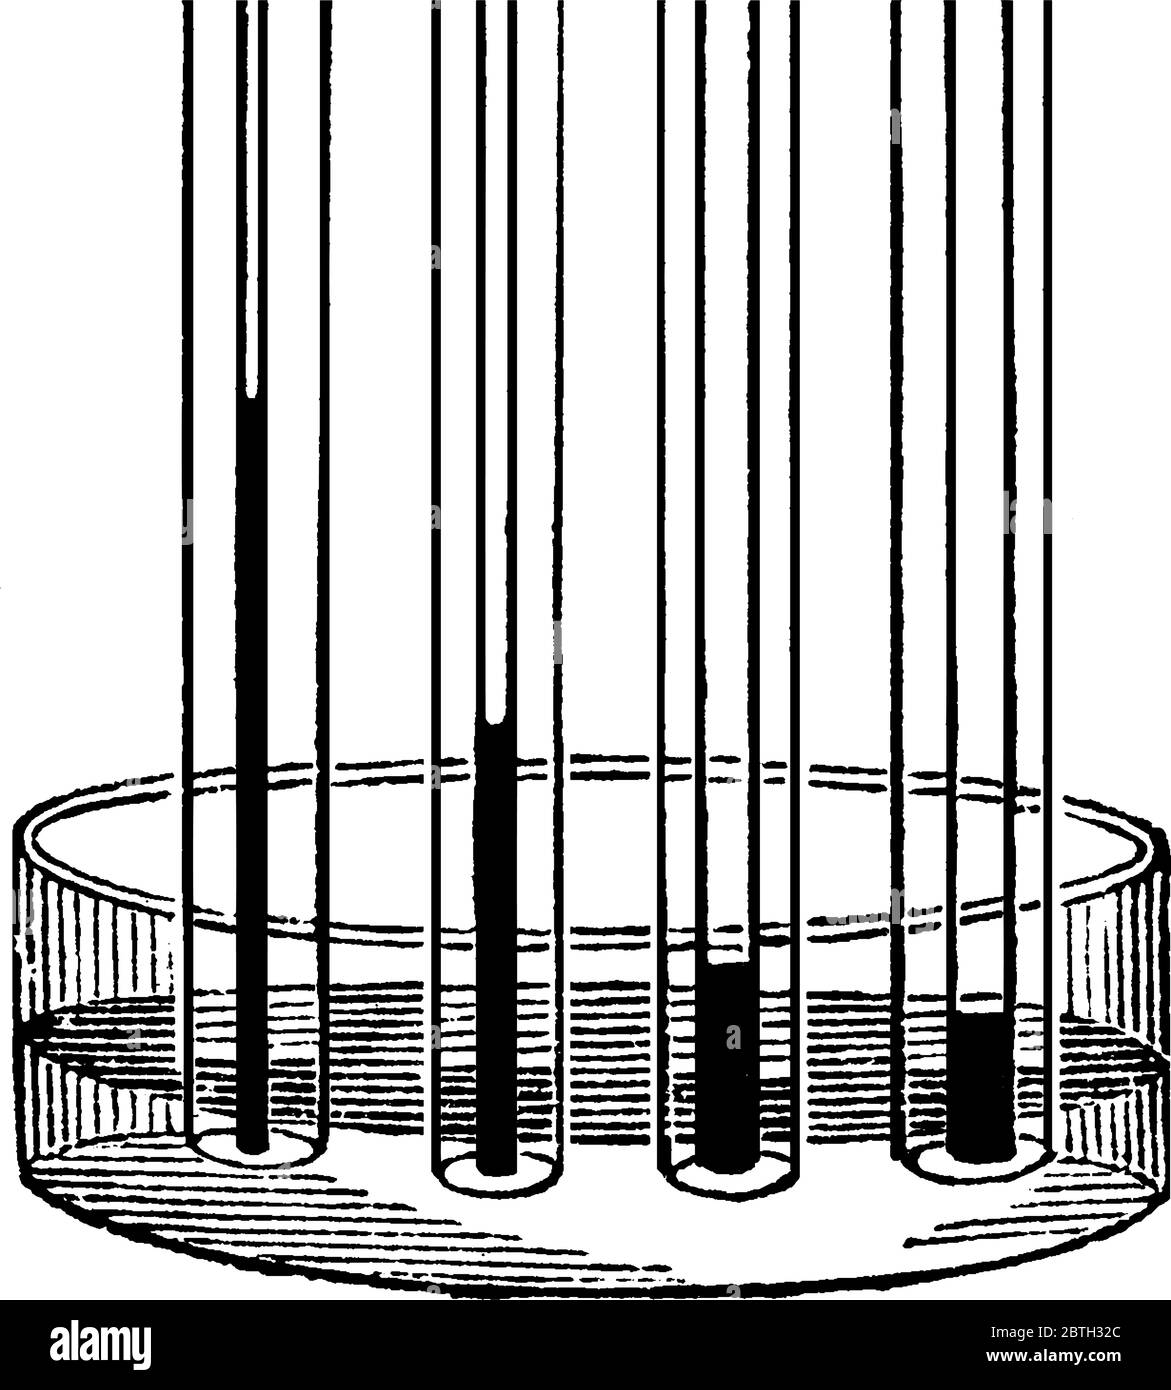 Eine typische Darstellung von Kapillarröhrchen verschiedener Breiten, die verschiedene Füllstände oder Höhen von Flüssigkeit enthalten, Vintage-Strichzeichnung oder Engravi Stock Vektor